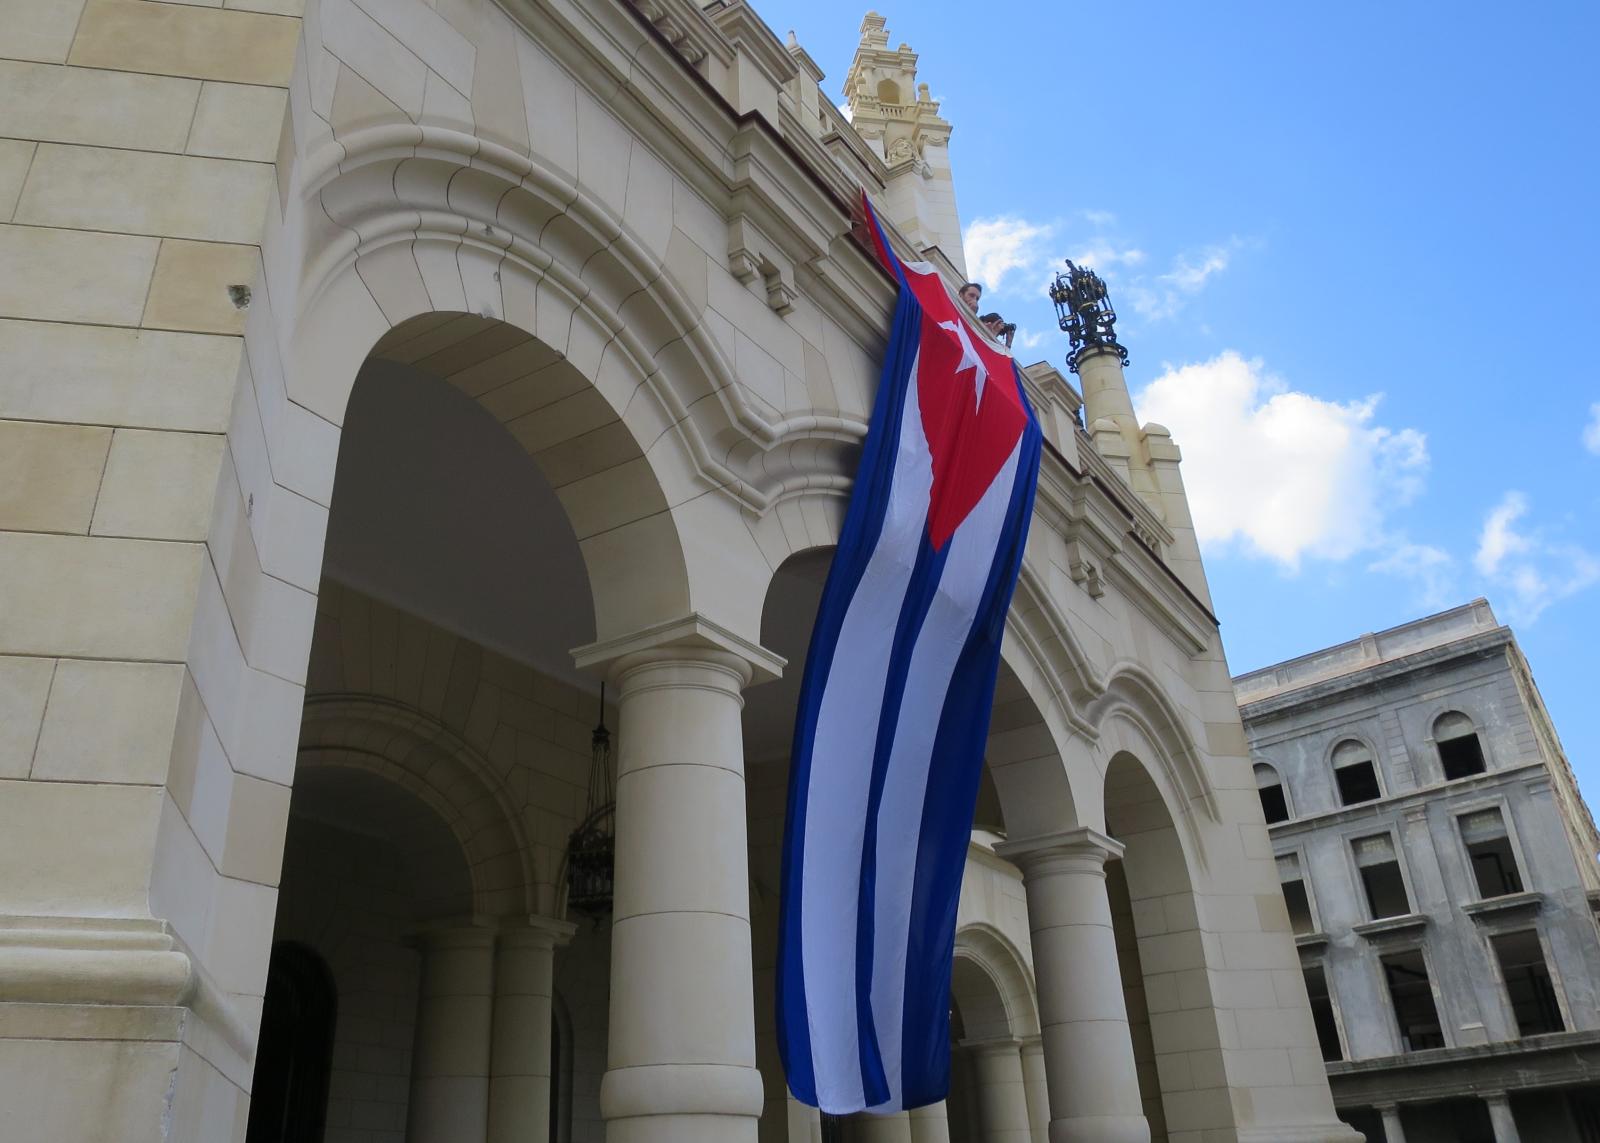 Cuban flag on a building.